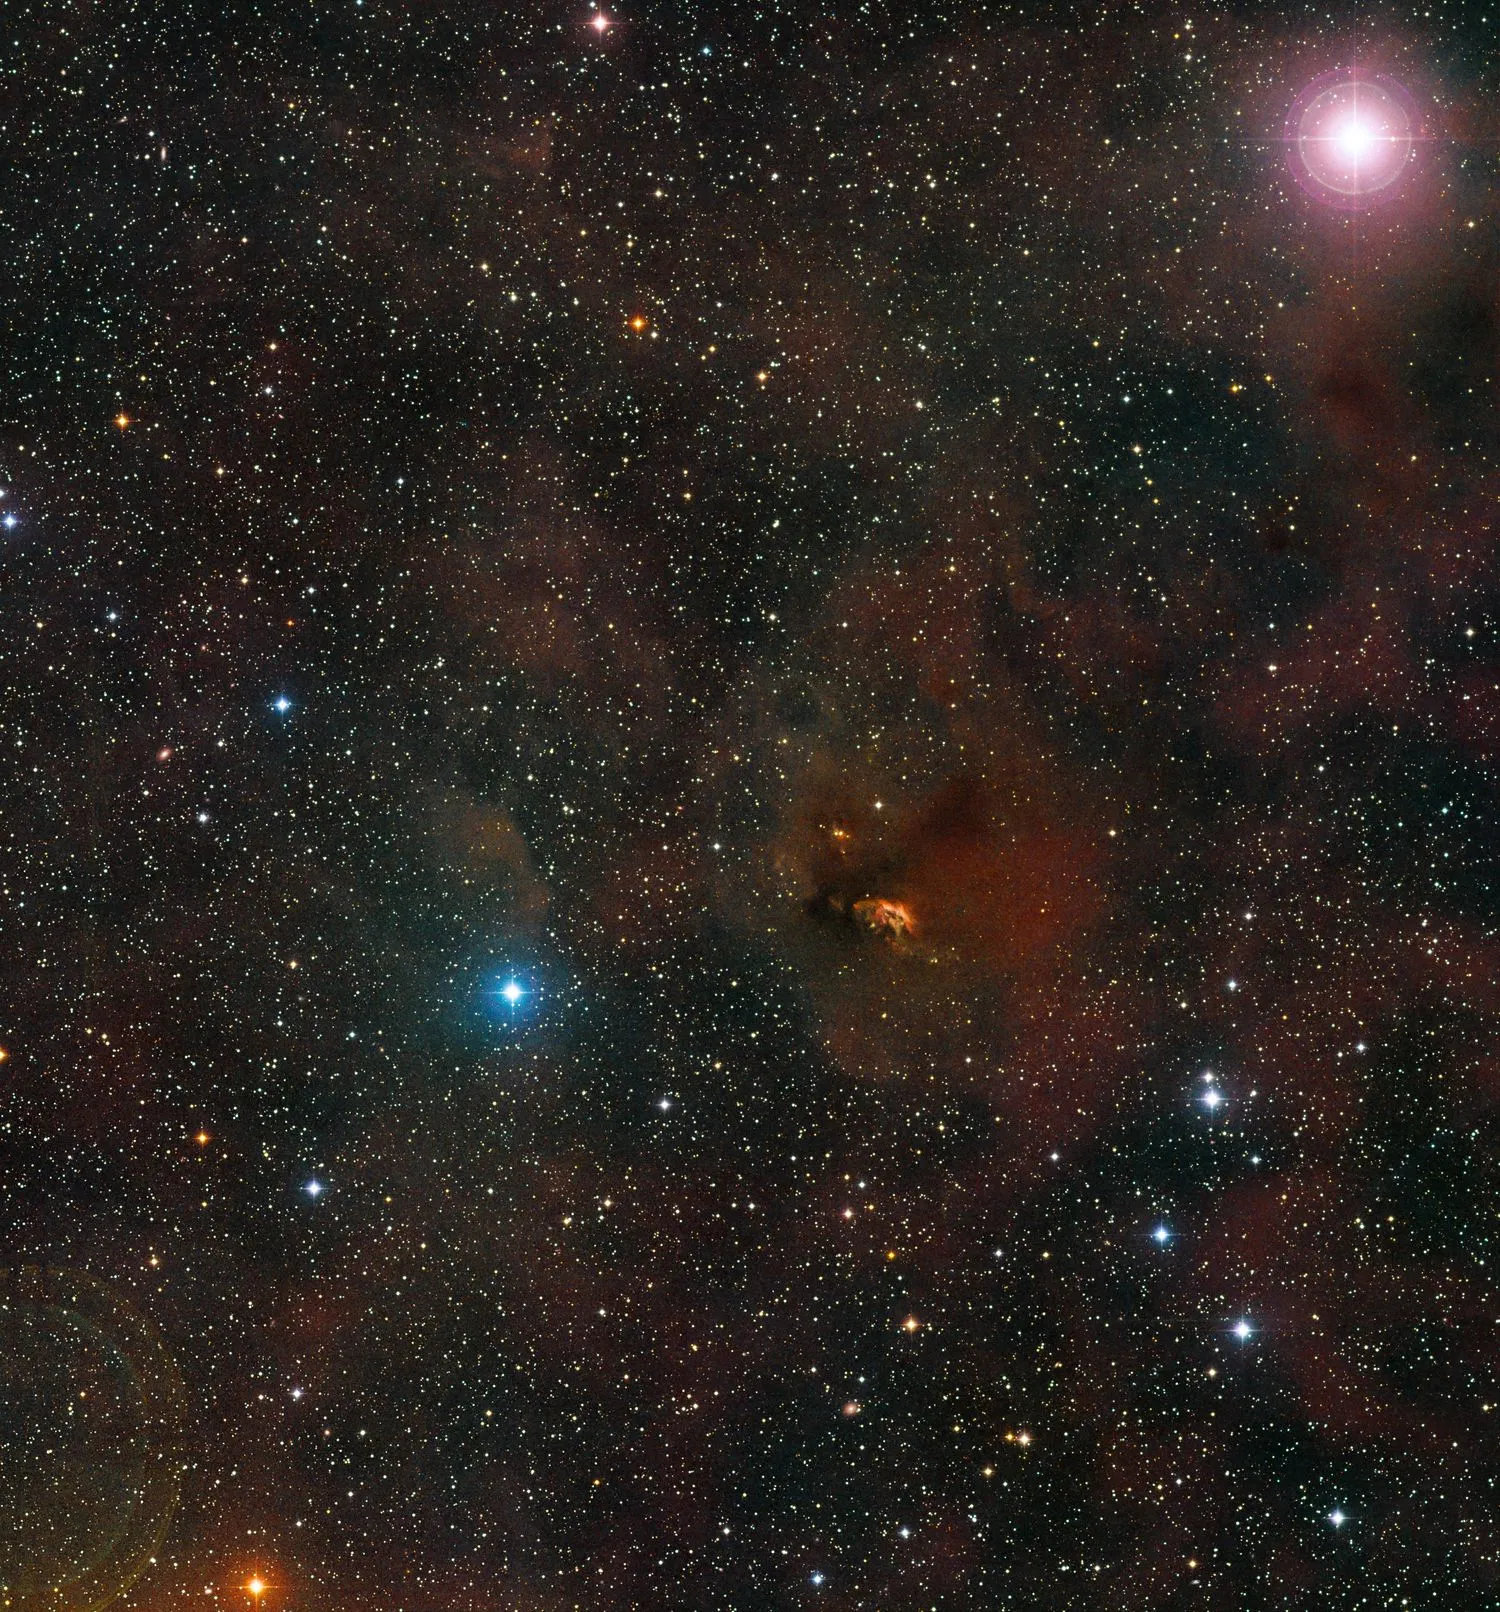 Ein dunkles Gebiet im Weltraum mit einigen gesprenkelten Sternen, einer leuchtenden weißen Kugel oben rechts und einer dunkleren, bläulichen und kleineren Kugel in der Mitte links. Ganz unten auf dem Bildschirm befindet sich eine orange-rote, feurig aussehende kleine Kugel, die fast ganz aus dem Bild verschwunden ist.